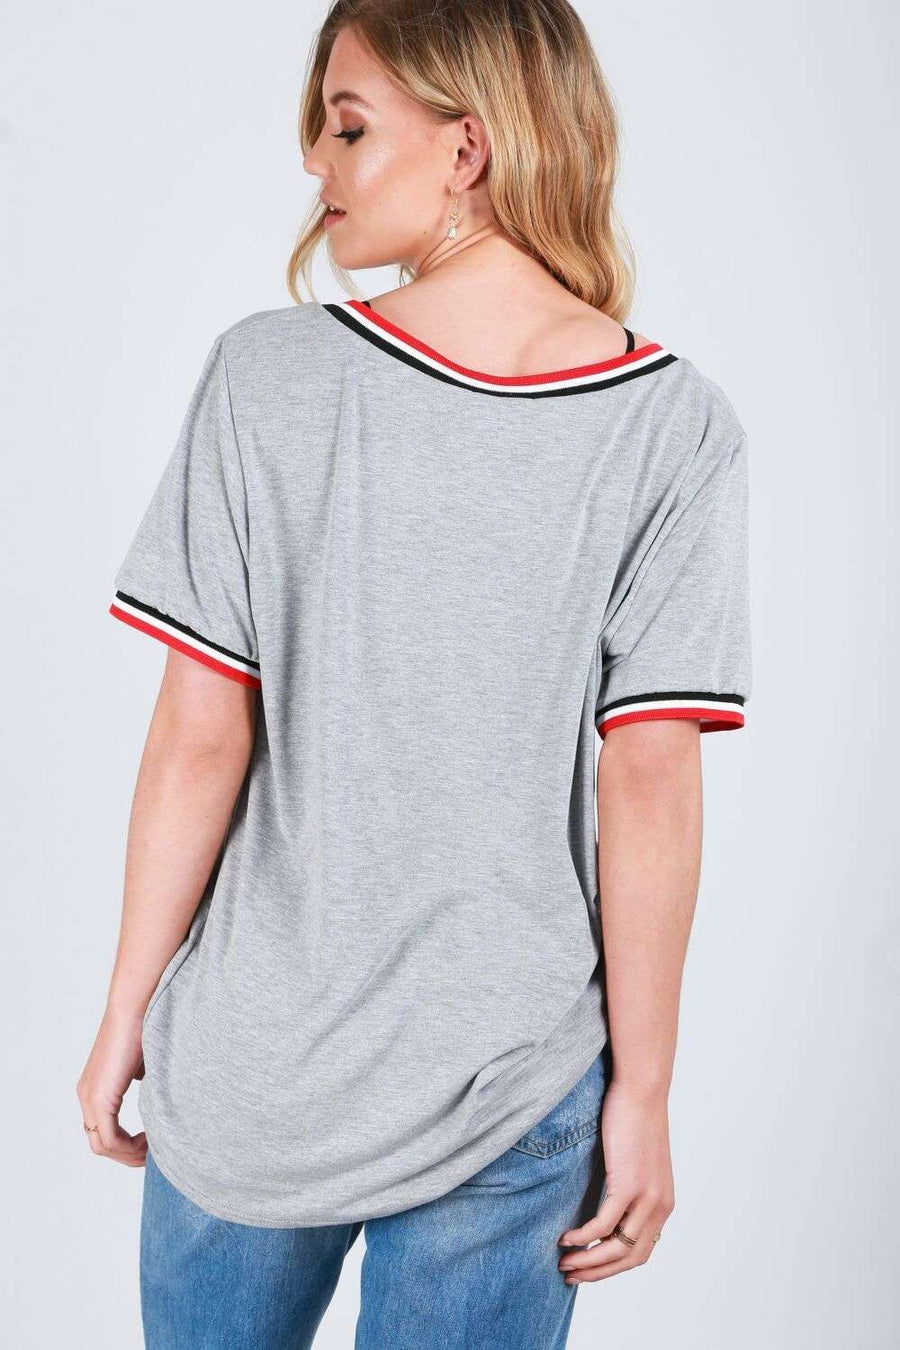 Elsie Oversized Vneck Striped Basic Tshirt - bejealous-com